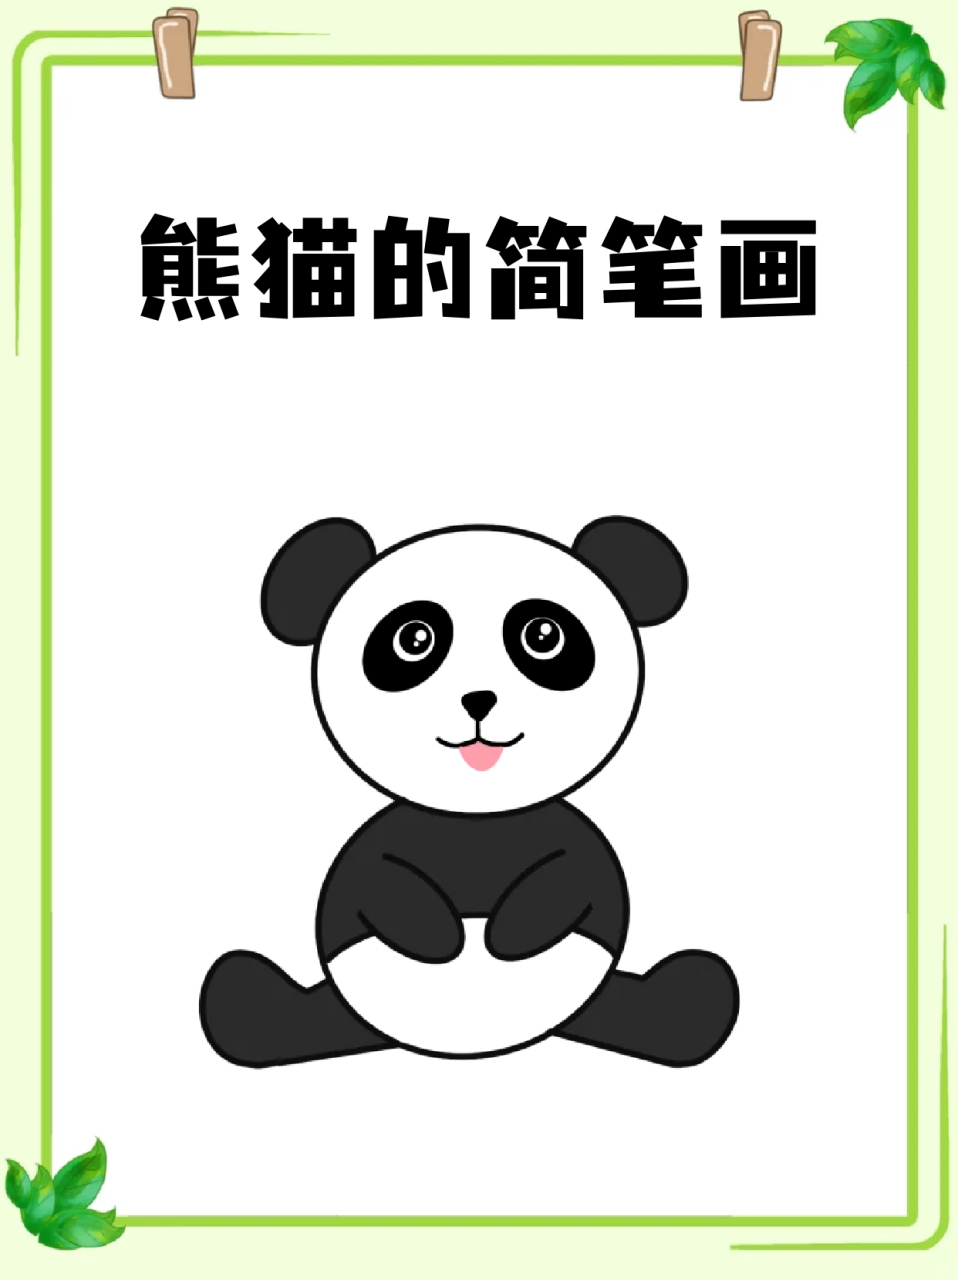 熊猫的简笔画 09吃竹子的大熊猫真的好可爱呀,92熊猫能有什么烦恼